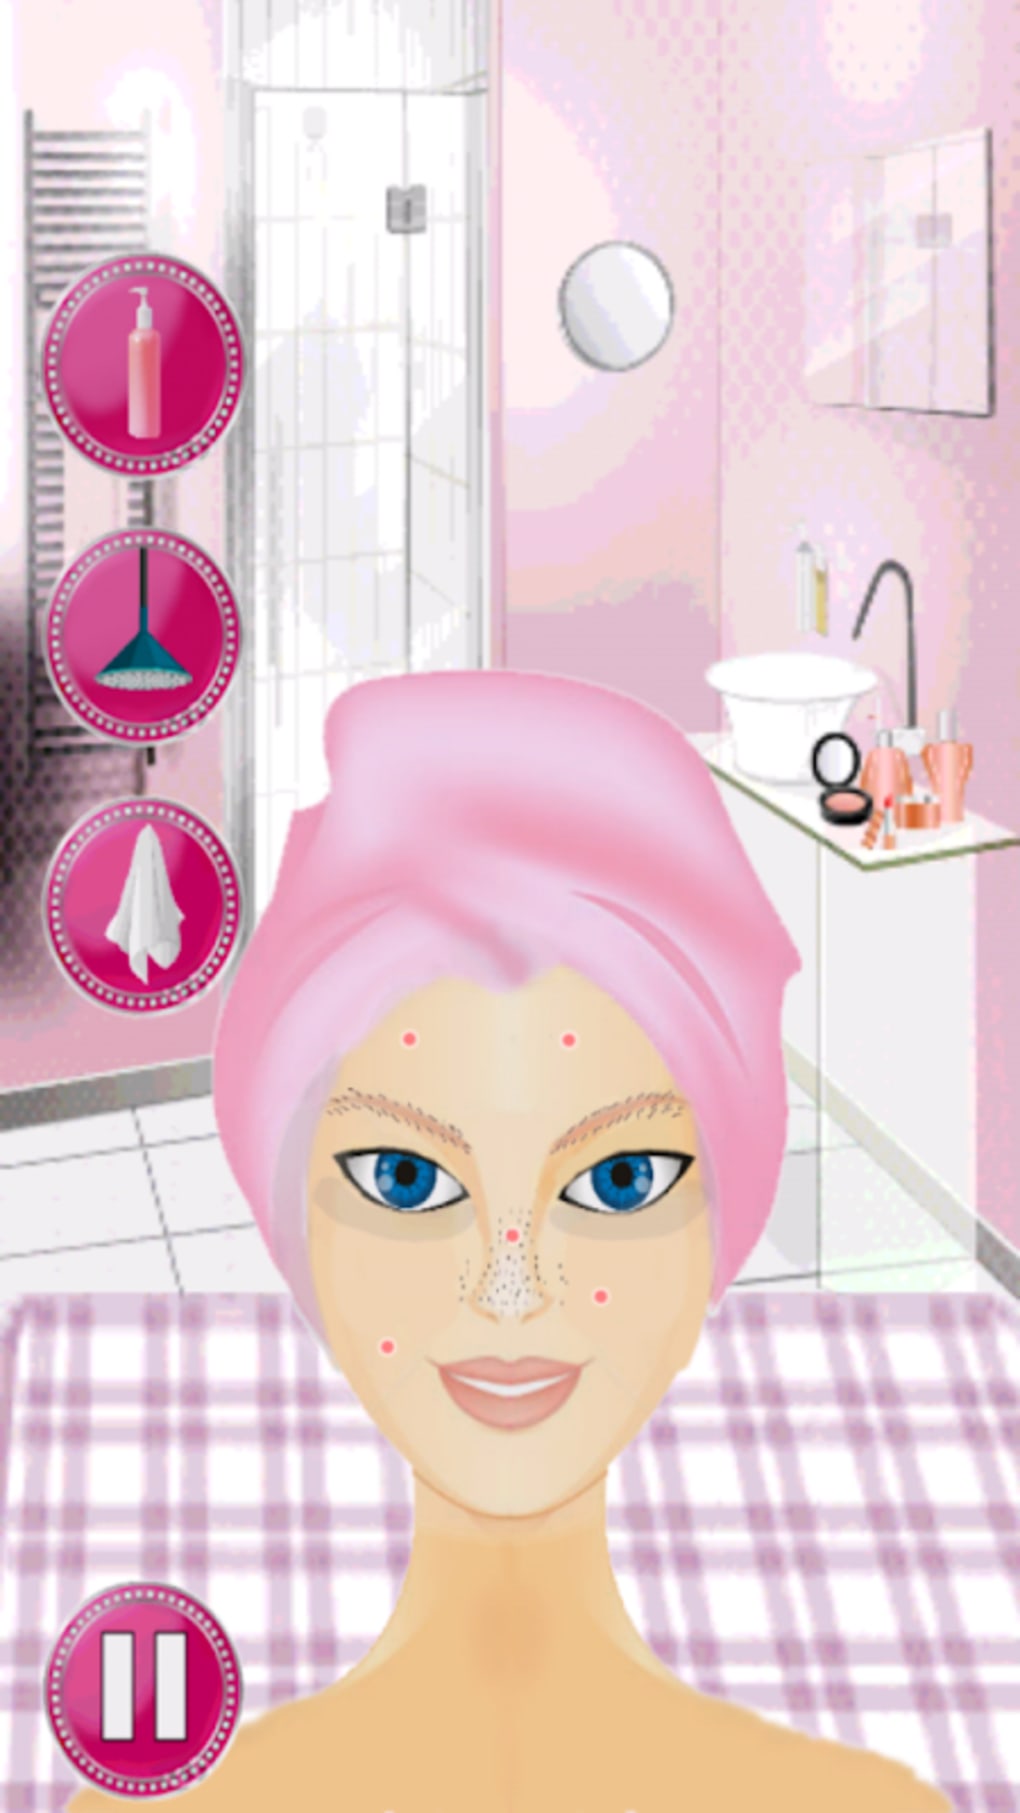 Spa da Barbie cabelos e maquiagem - Jogos para Meninas